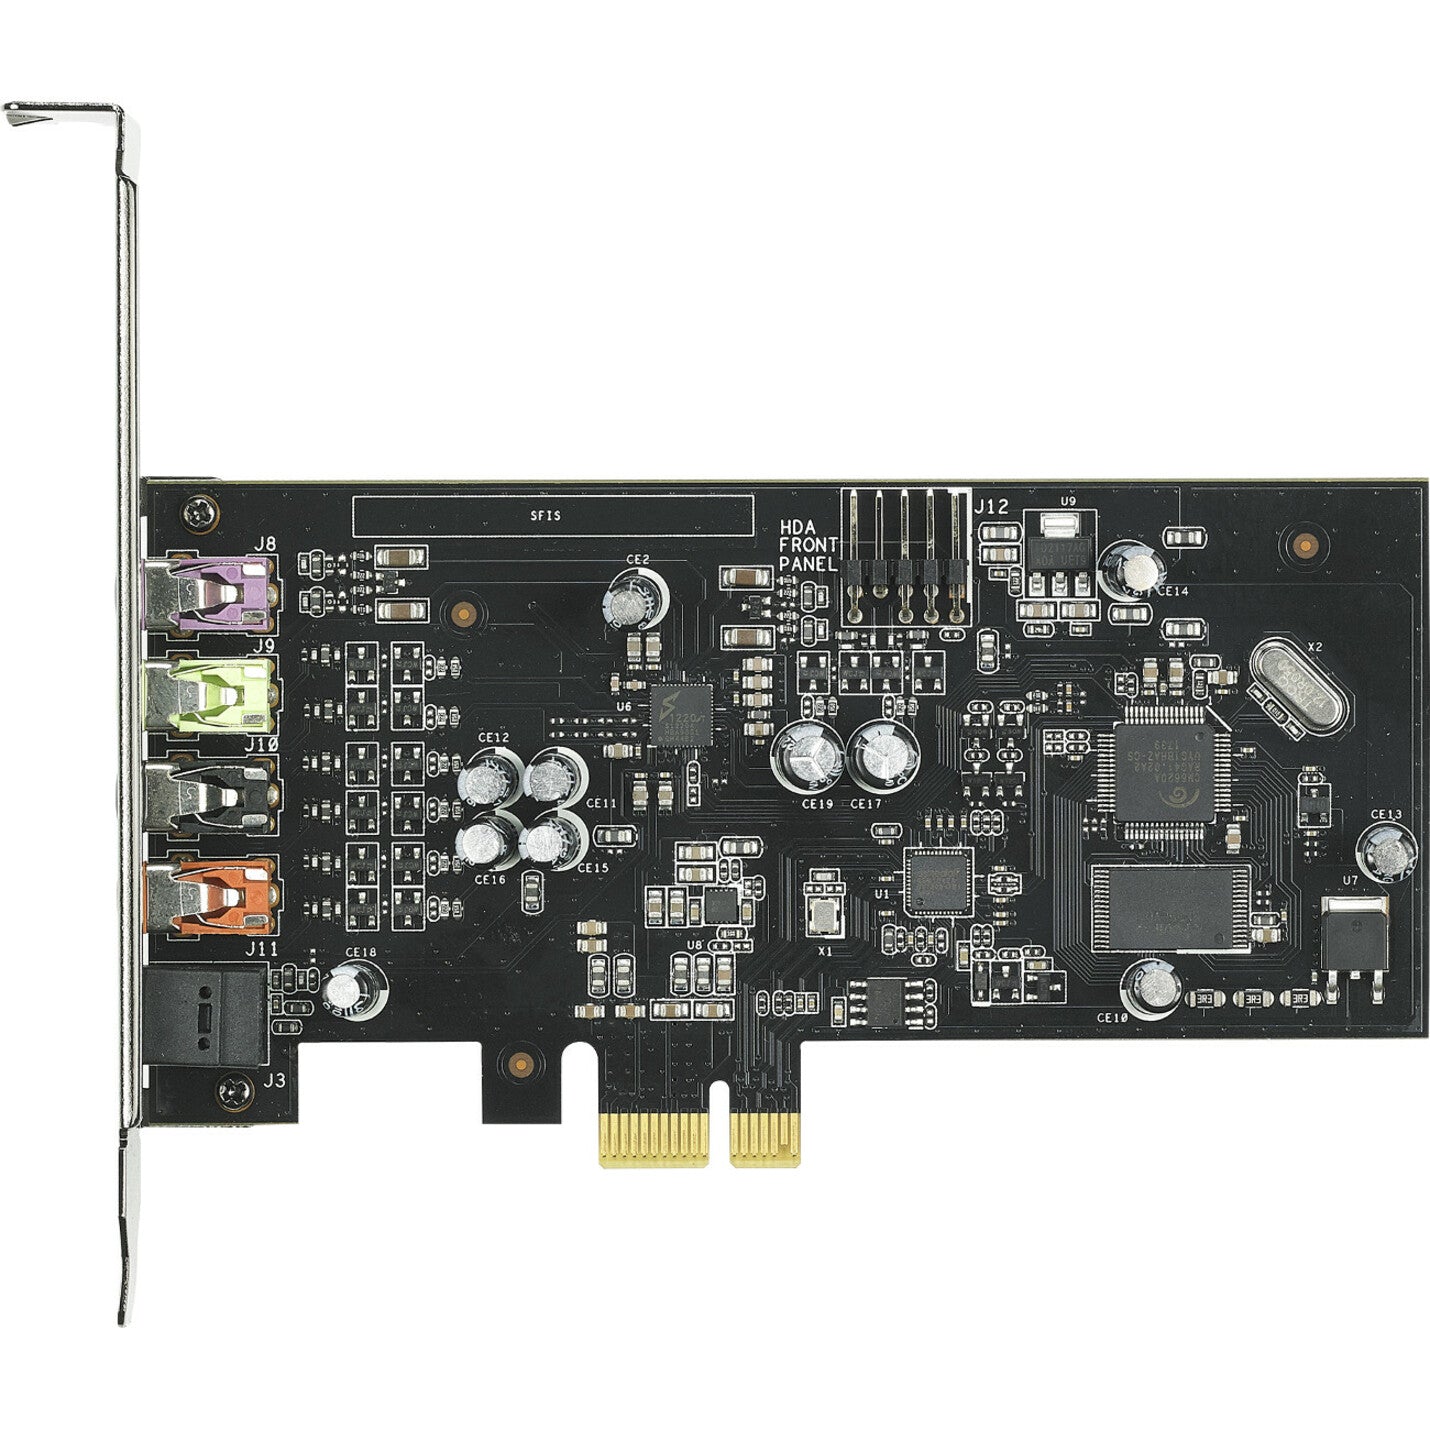 Asus XONAR SE Sound Board, 5.1 Channel PCI Express 24-bit 192 kHz Internal Sound Card